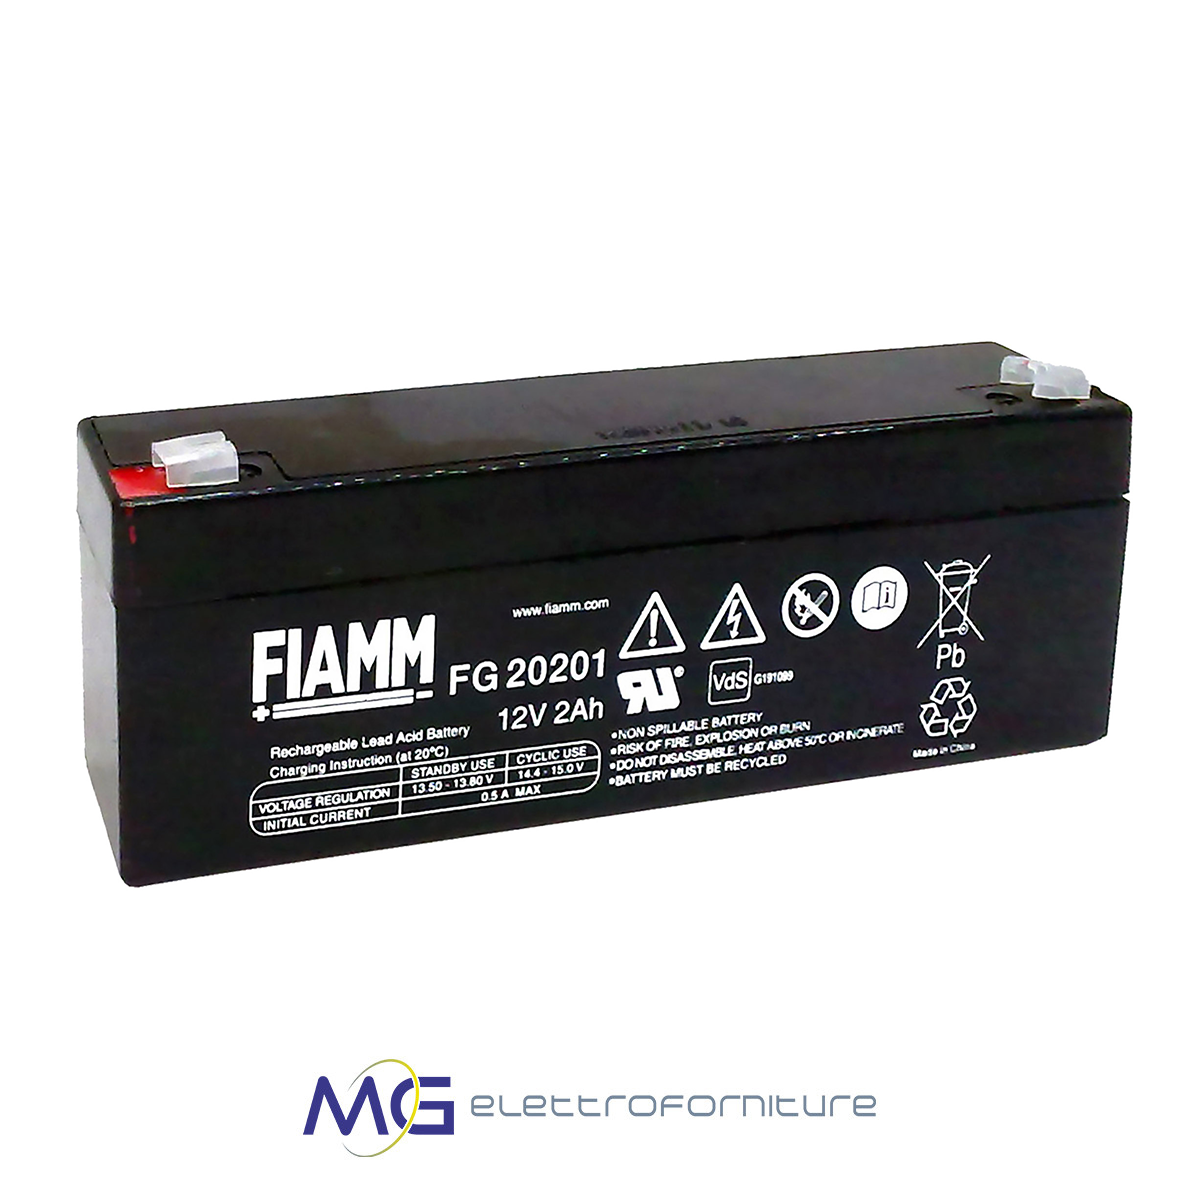 Fiamm 12v. Батарея аккумуляторная FIAMM FG 20722. Батарея аккумуляторная FIAMM fg20341. Аккумулятор FIAMM fg20201. FG 20722 аккумуляторная батарея 12в 7,2 Ач.